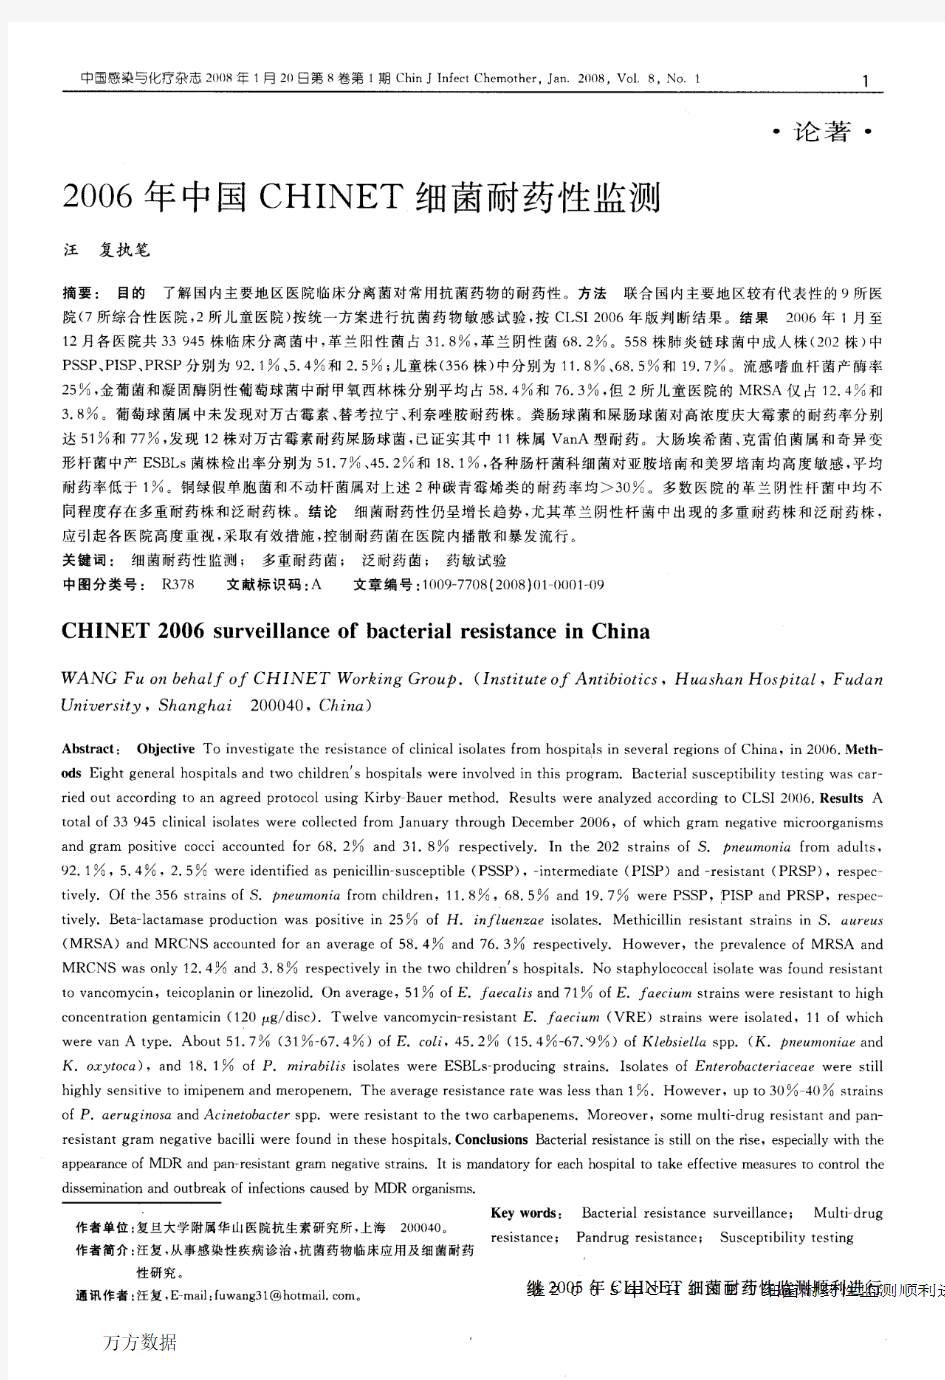 2006年中国CHINET细菌耐药性监测